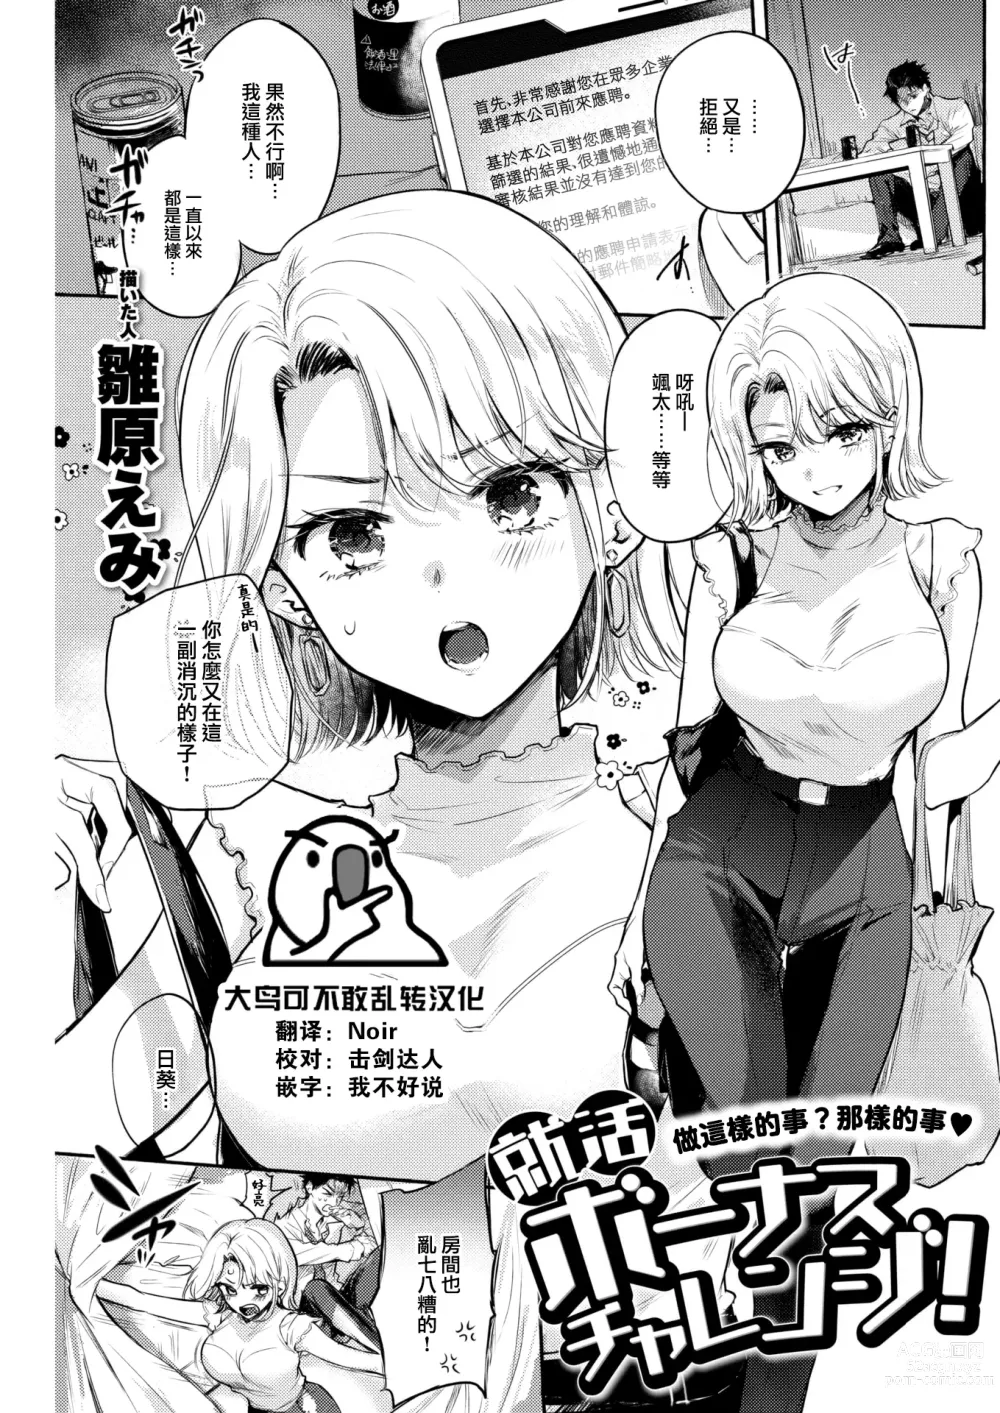 Page 1 of manga ] Shuukatsu Bonus Challenge!